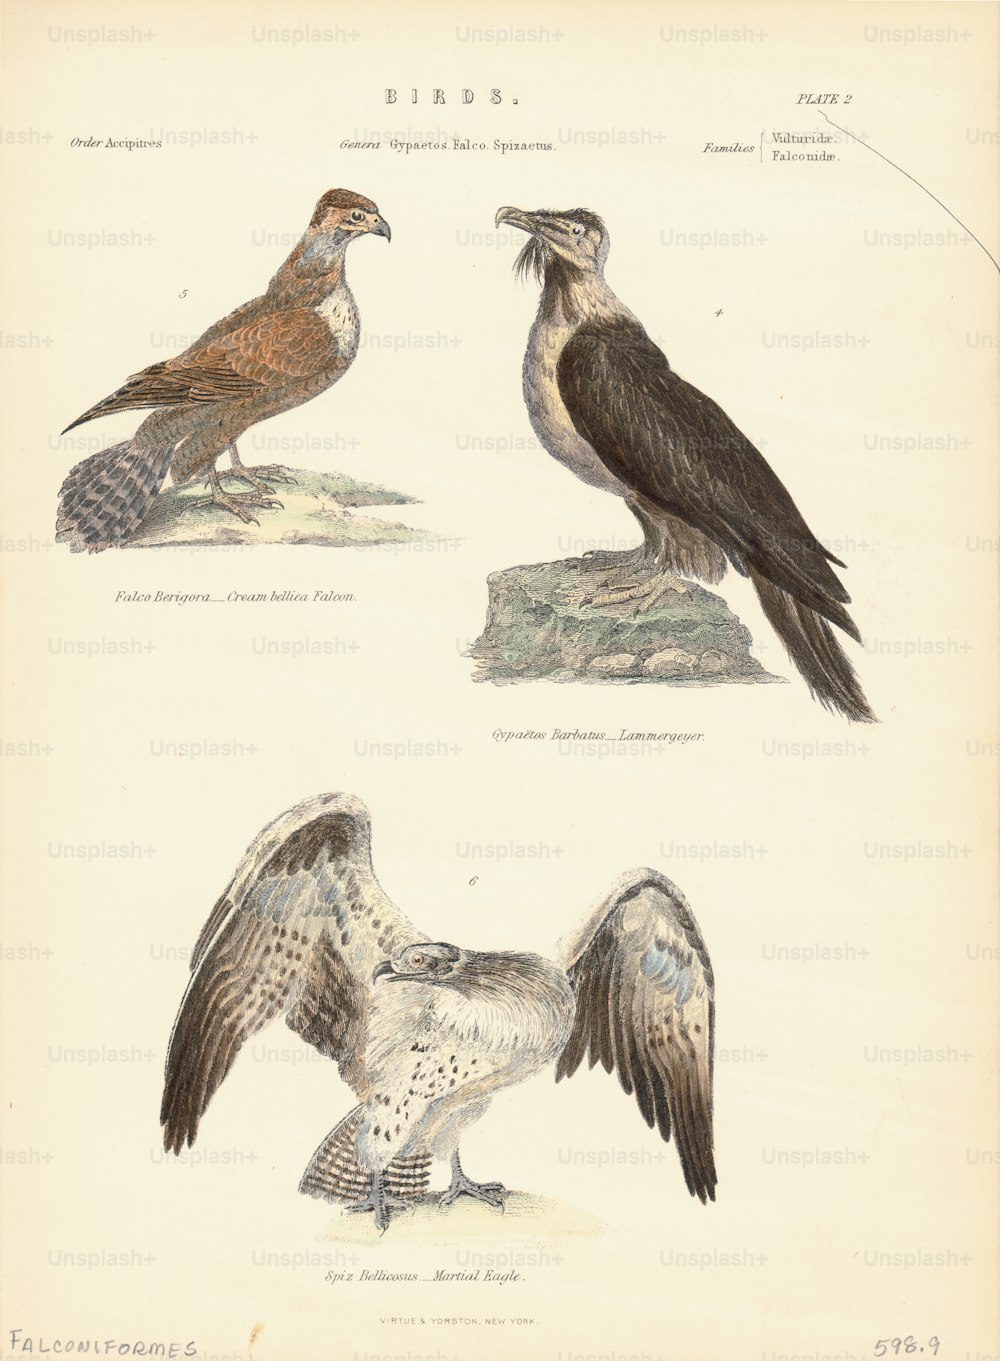 다음을 포함하는 일주 맹금류로 구성된 주문 Falconiformes의 여러 조류 종의 색상 그림; 무술 독수리와 갈색 팔콘. (사진: 킨 컬렉션/아카이브 사진/게티 이미지)